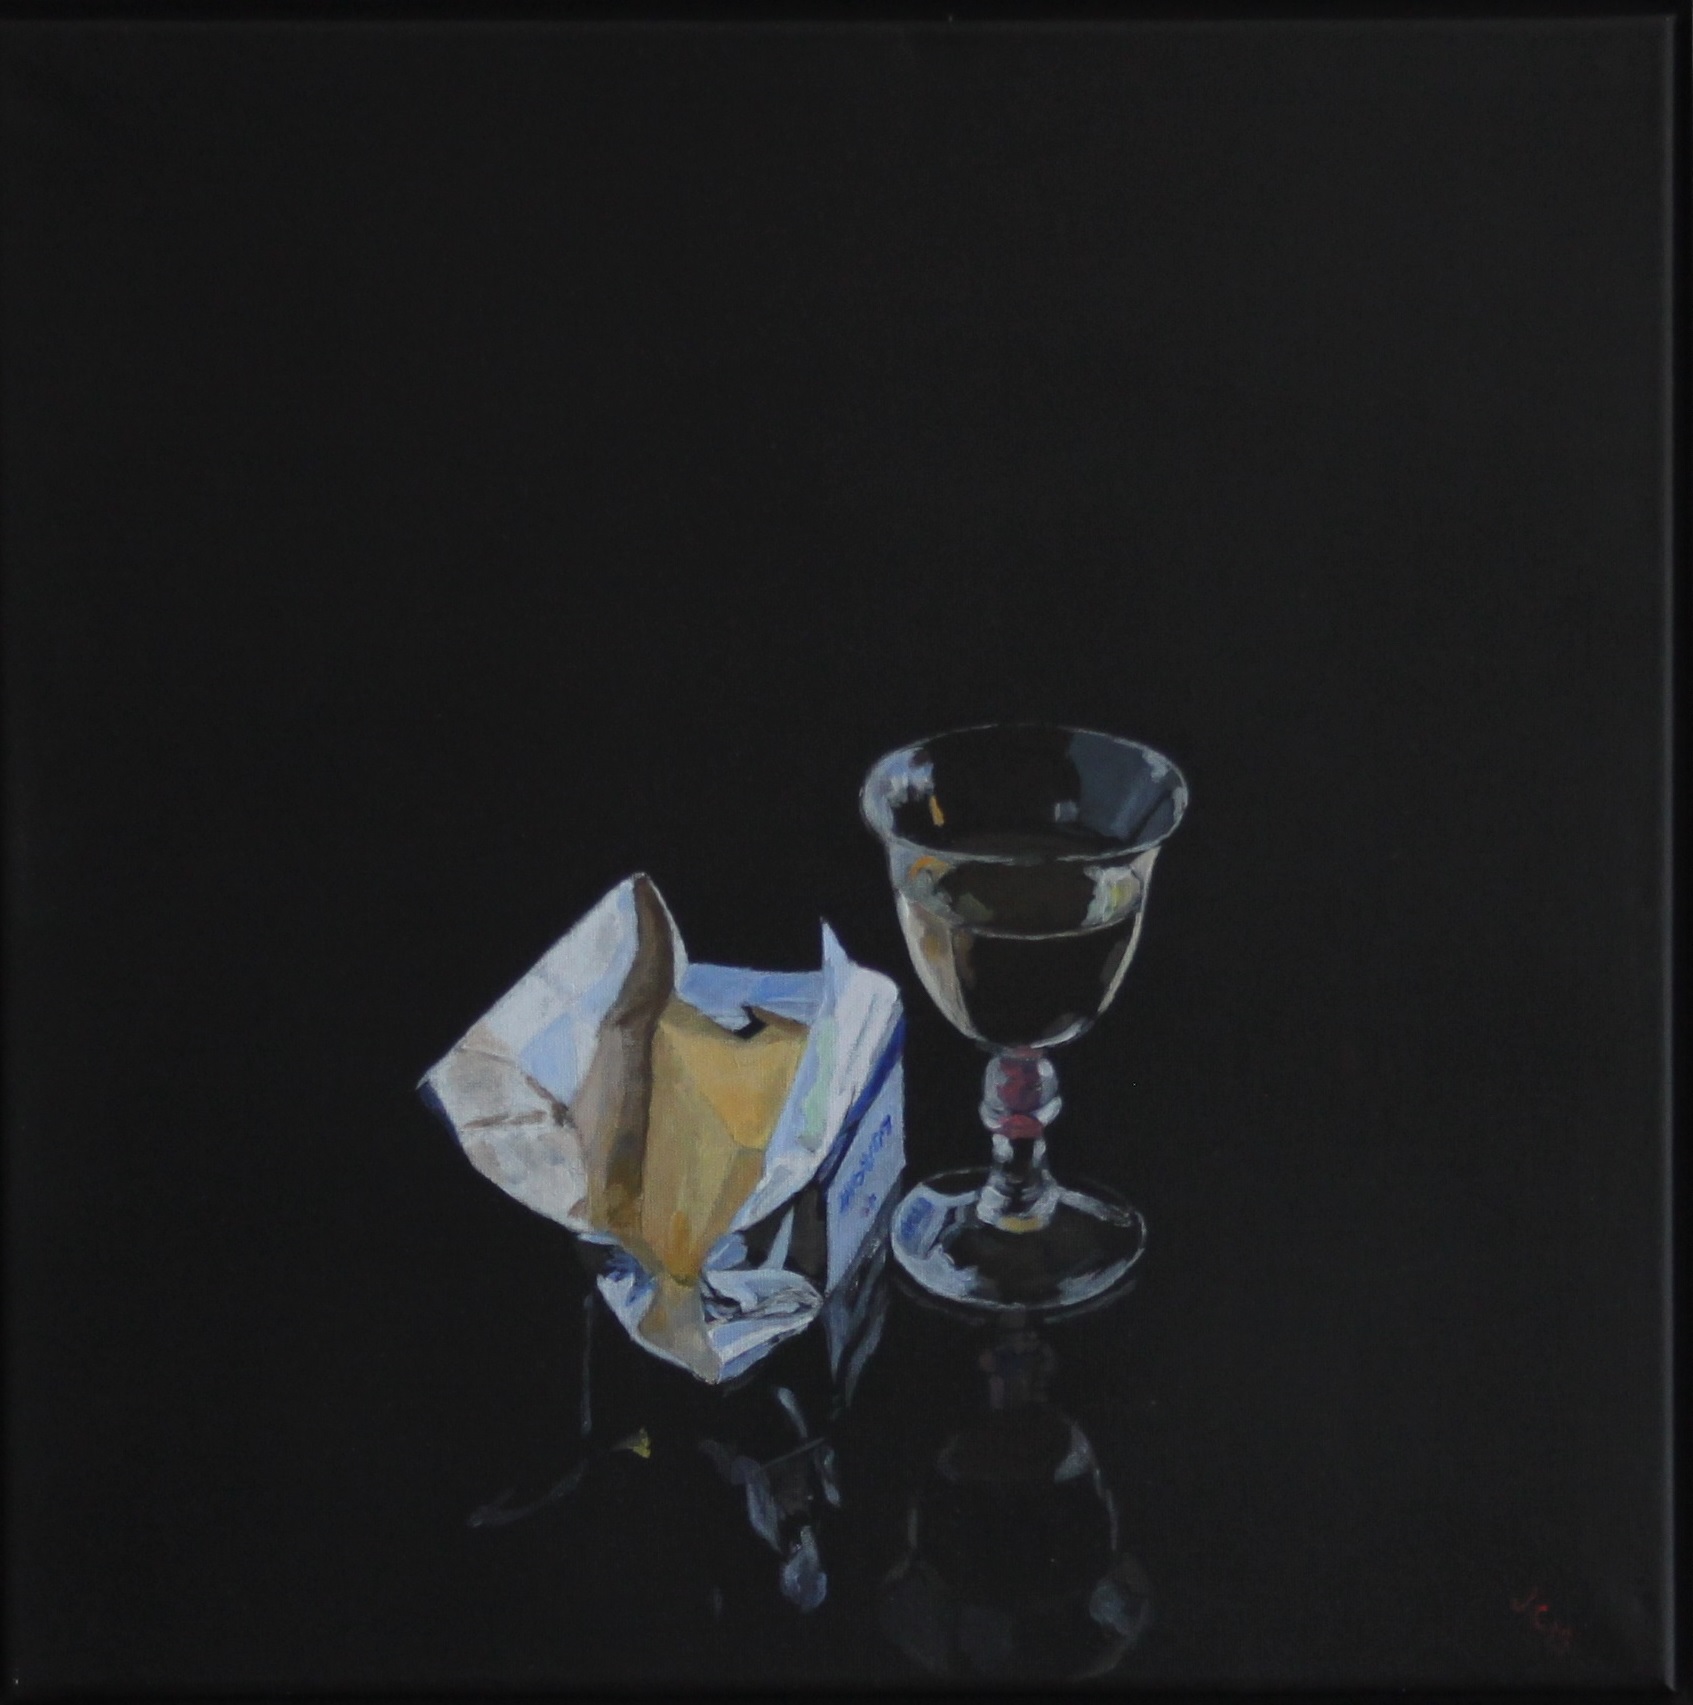 2015 Glas og smørpakke, akryl på lærred, 50 x 50